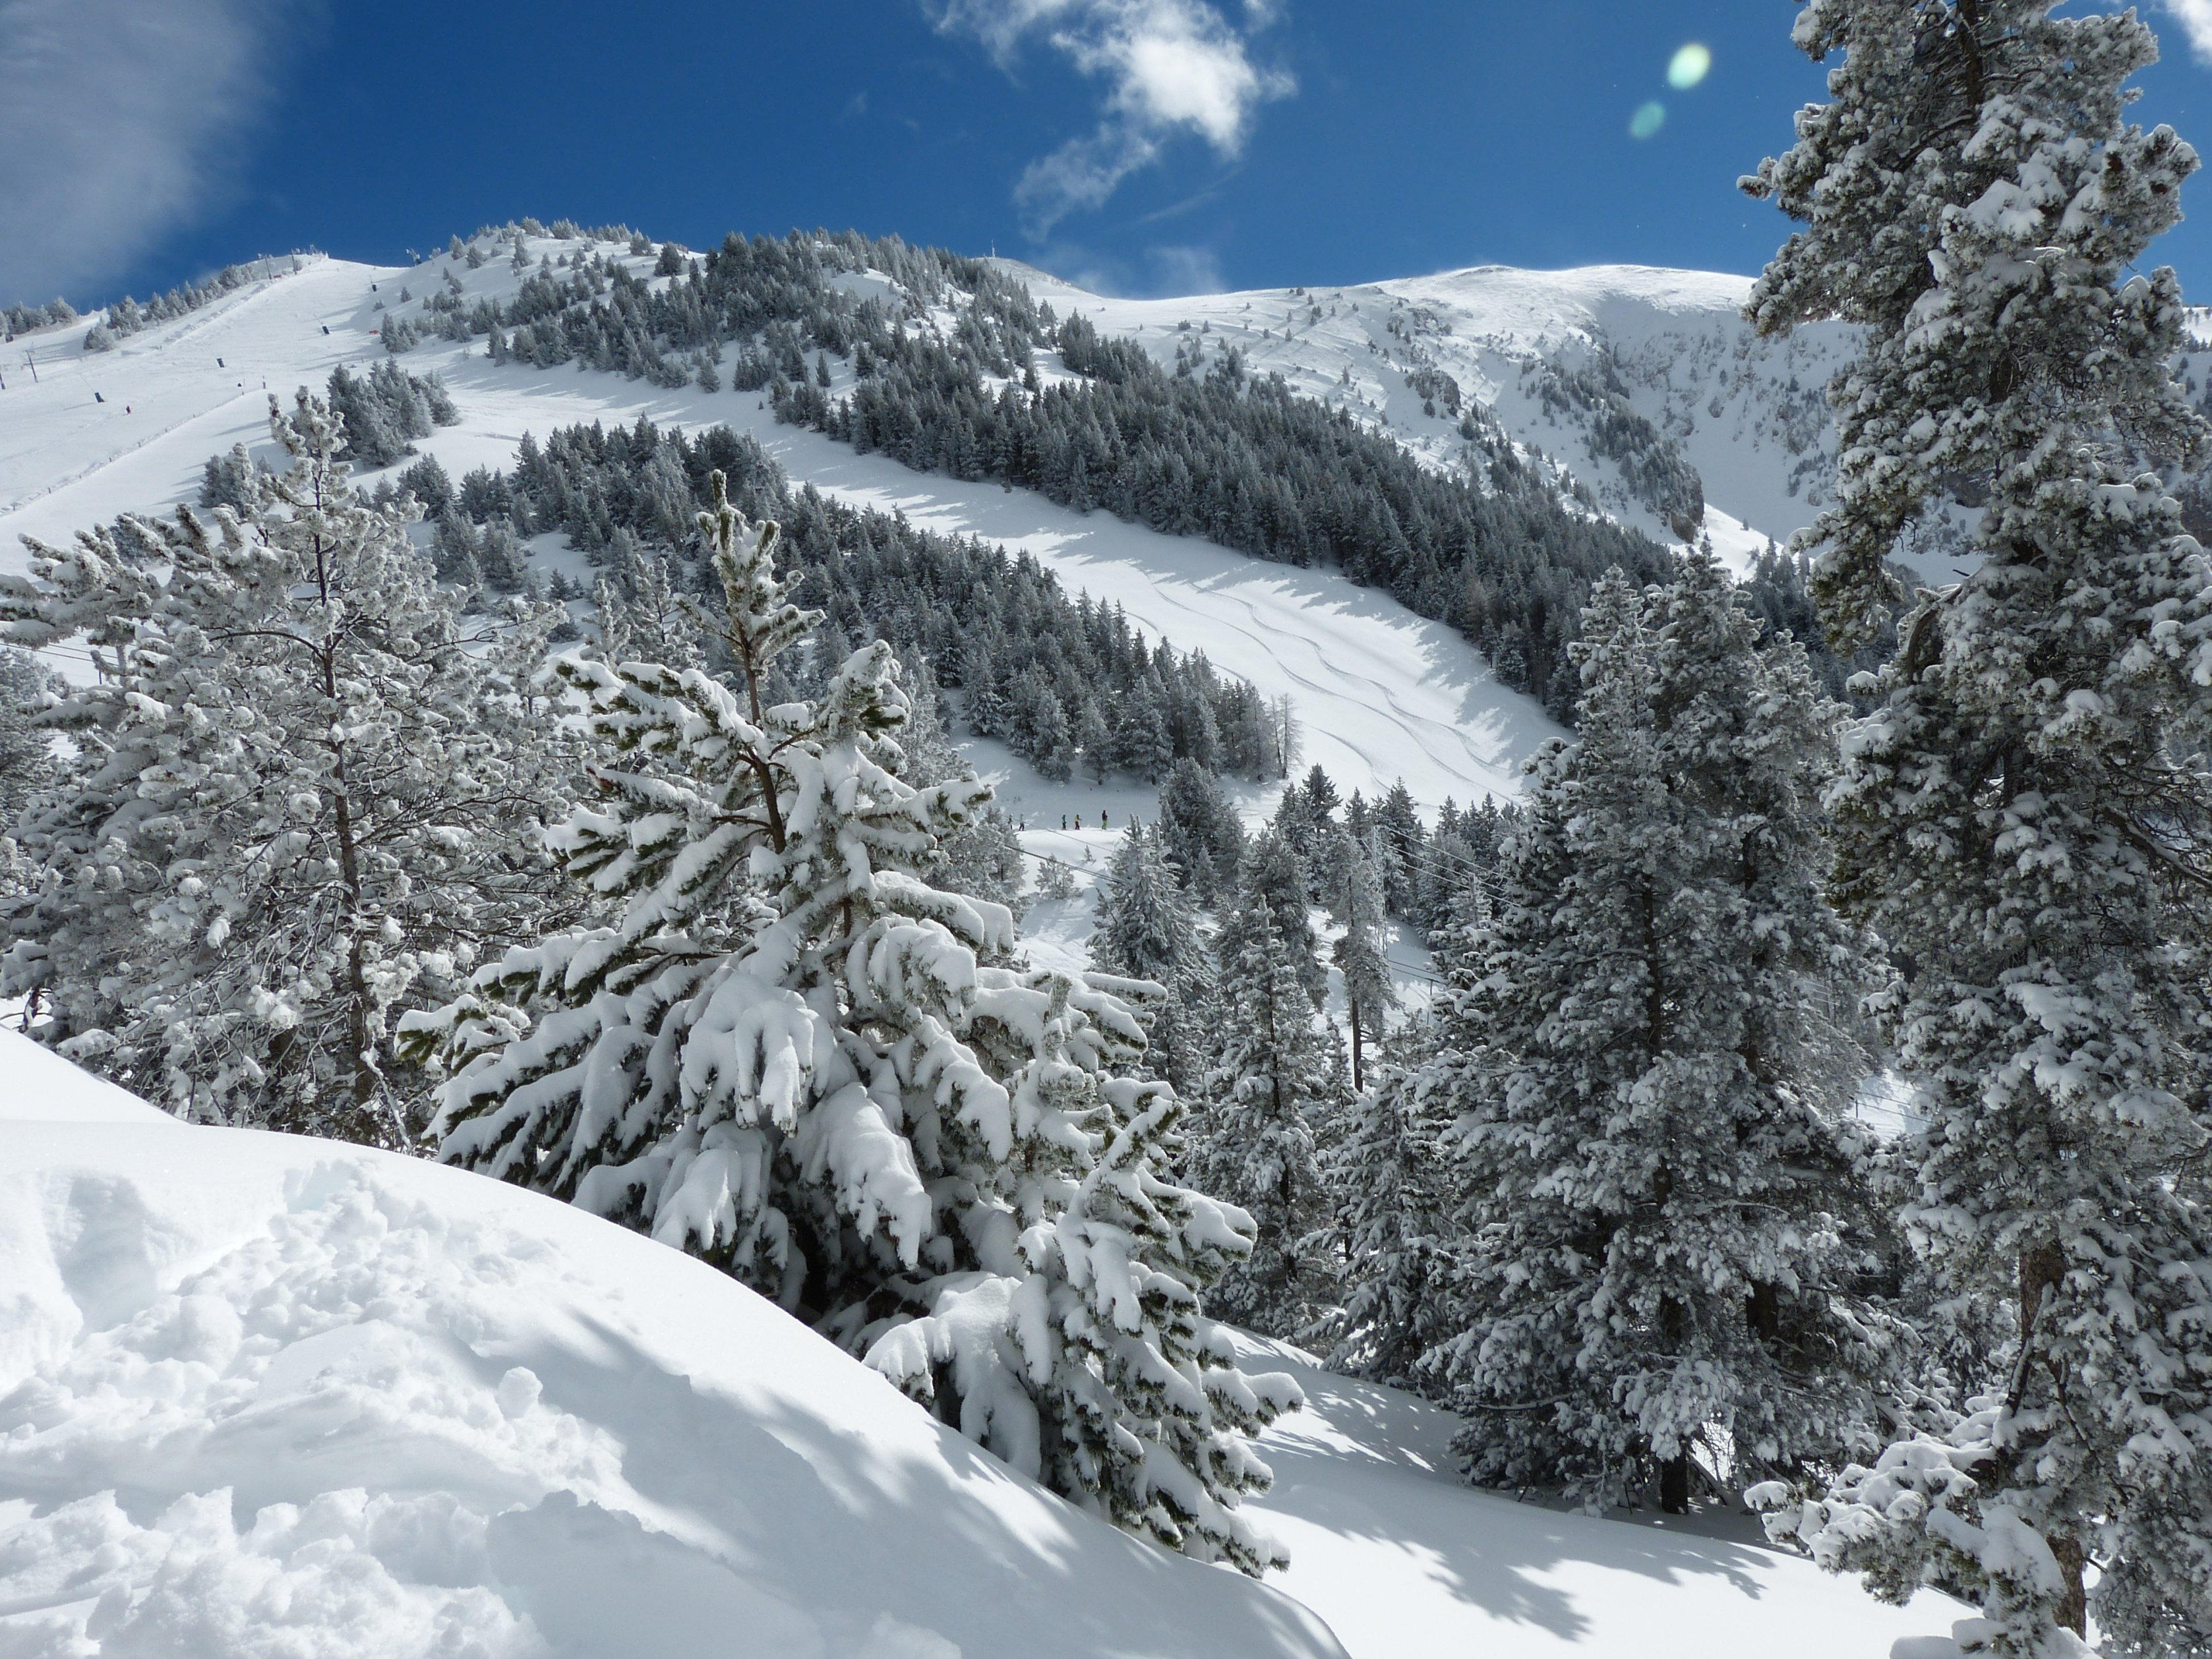 Les estacions gironines tanquen "un bon Nadal" pel clima i la poca neu al pirineu francès